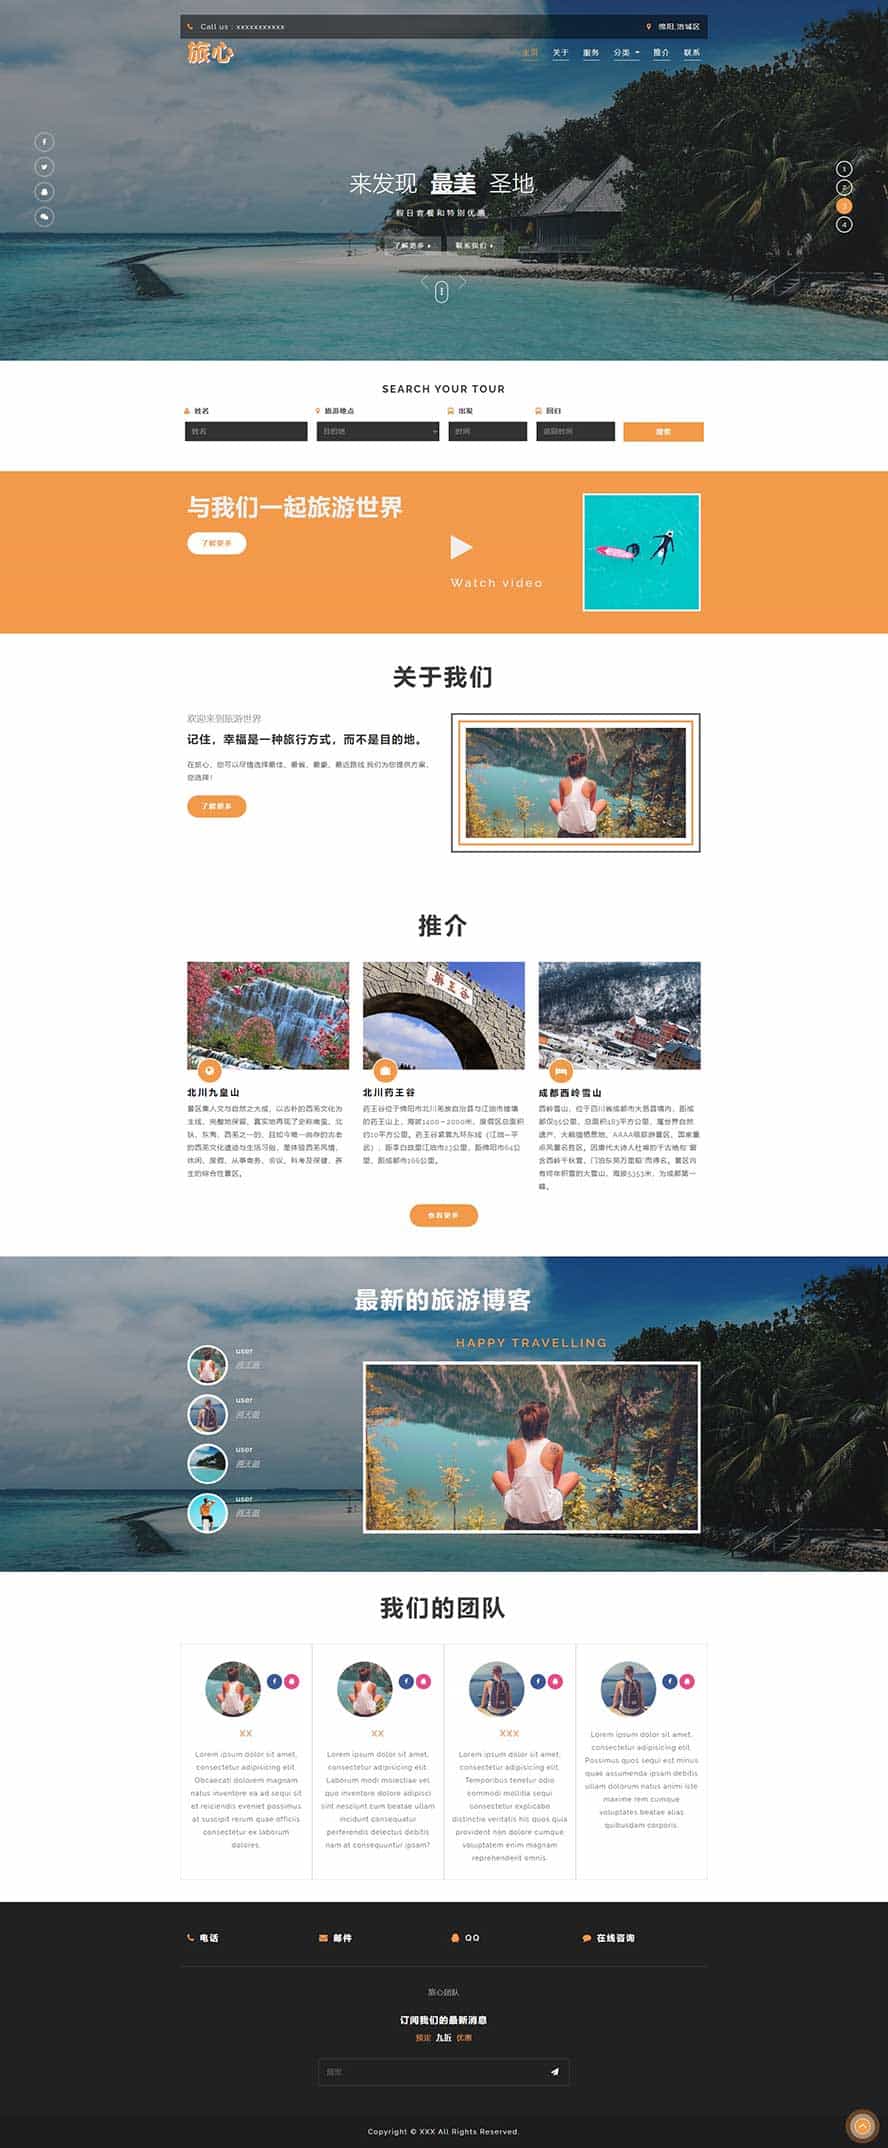 旅行社网站模板,旅游公司html模板